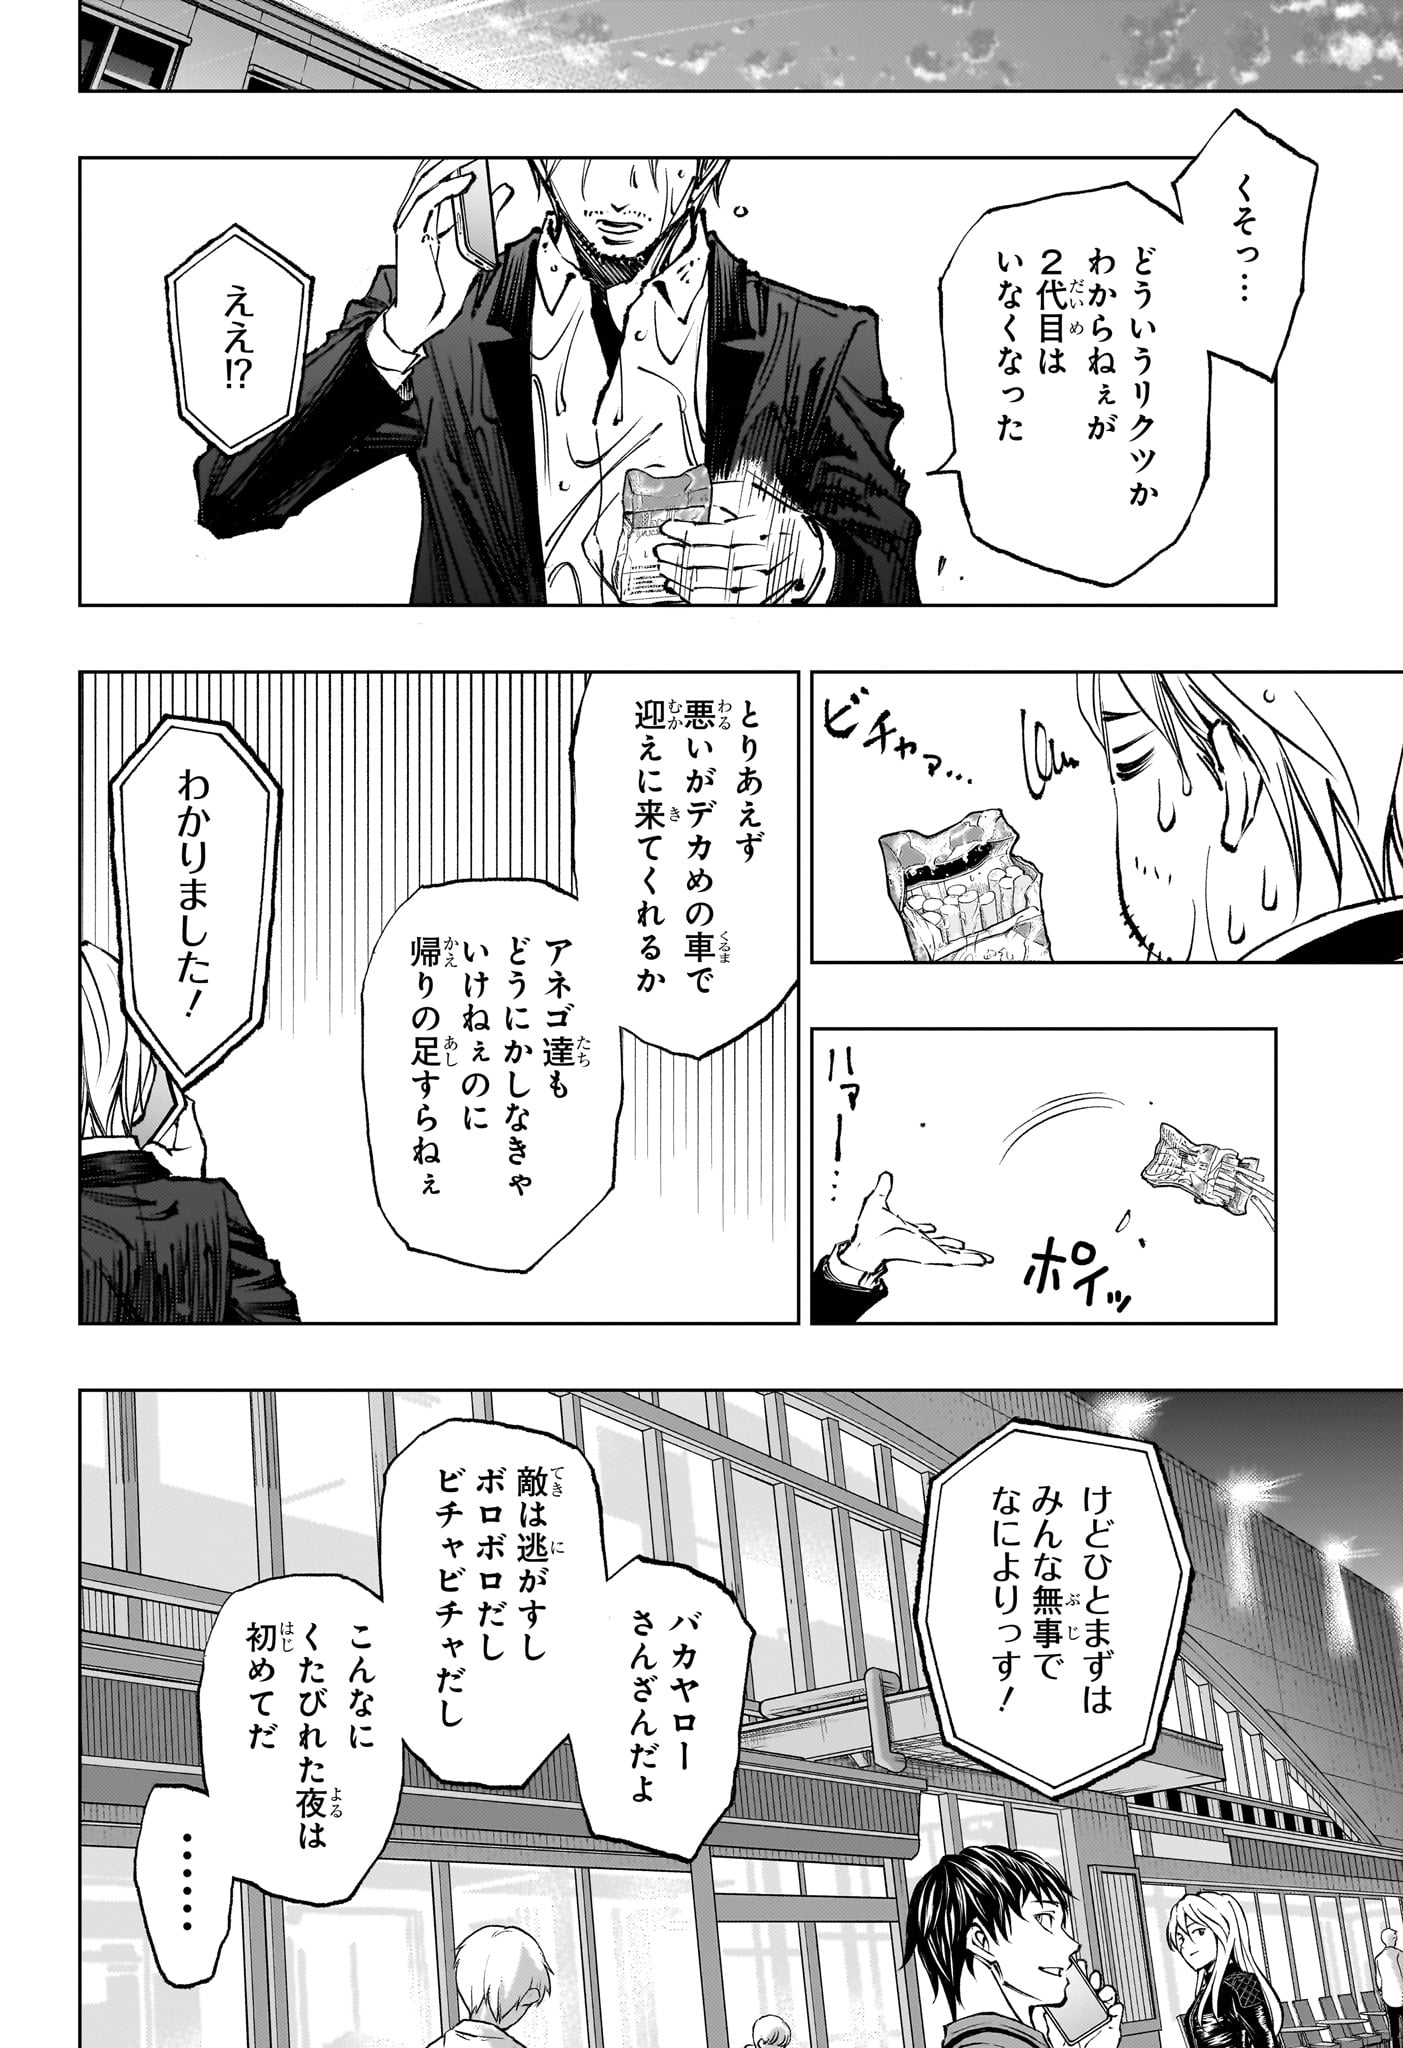 Kill Ao - Chapter 51 - Page 18